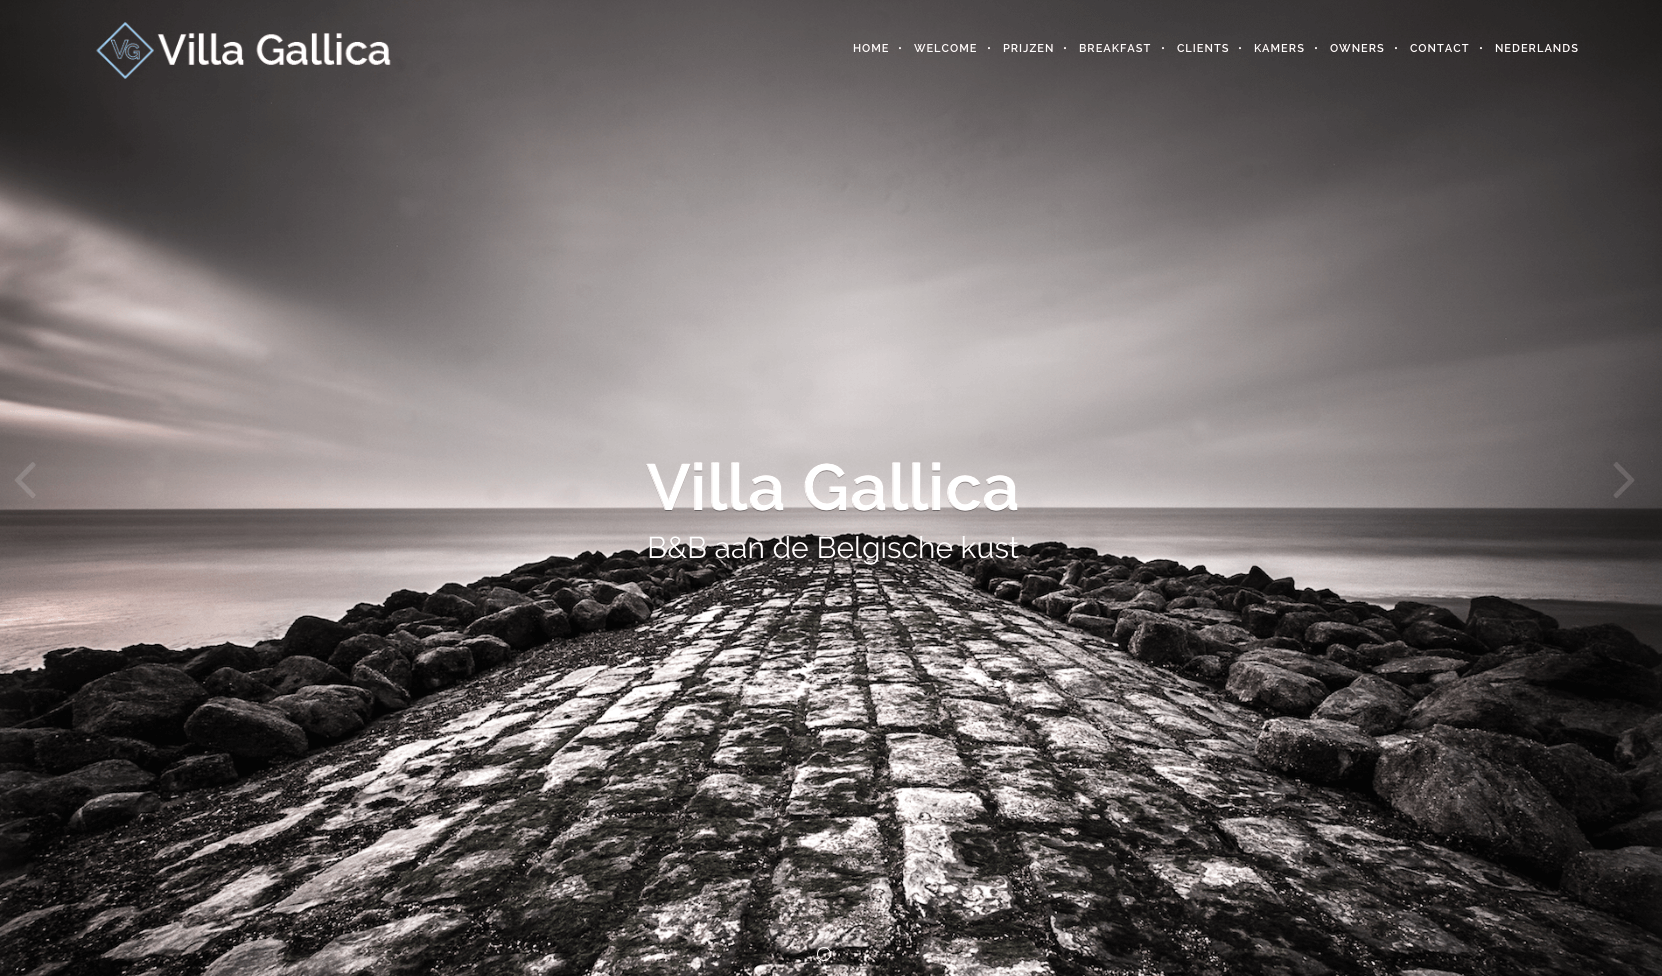 Villa Gallica is online